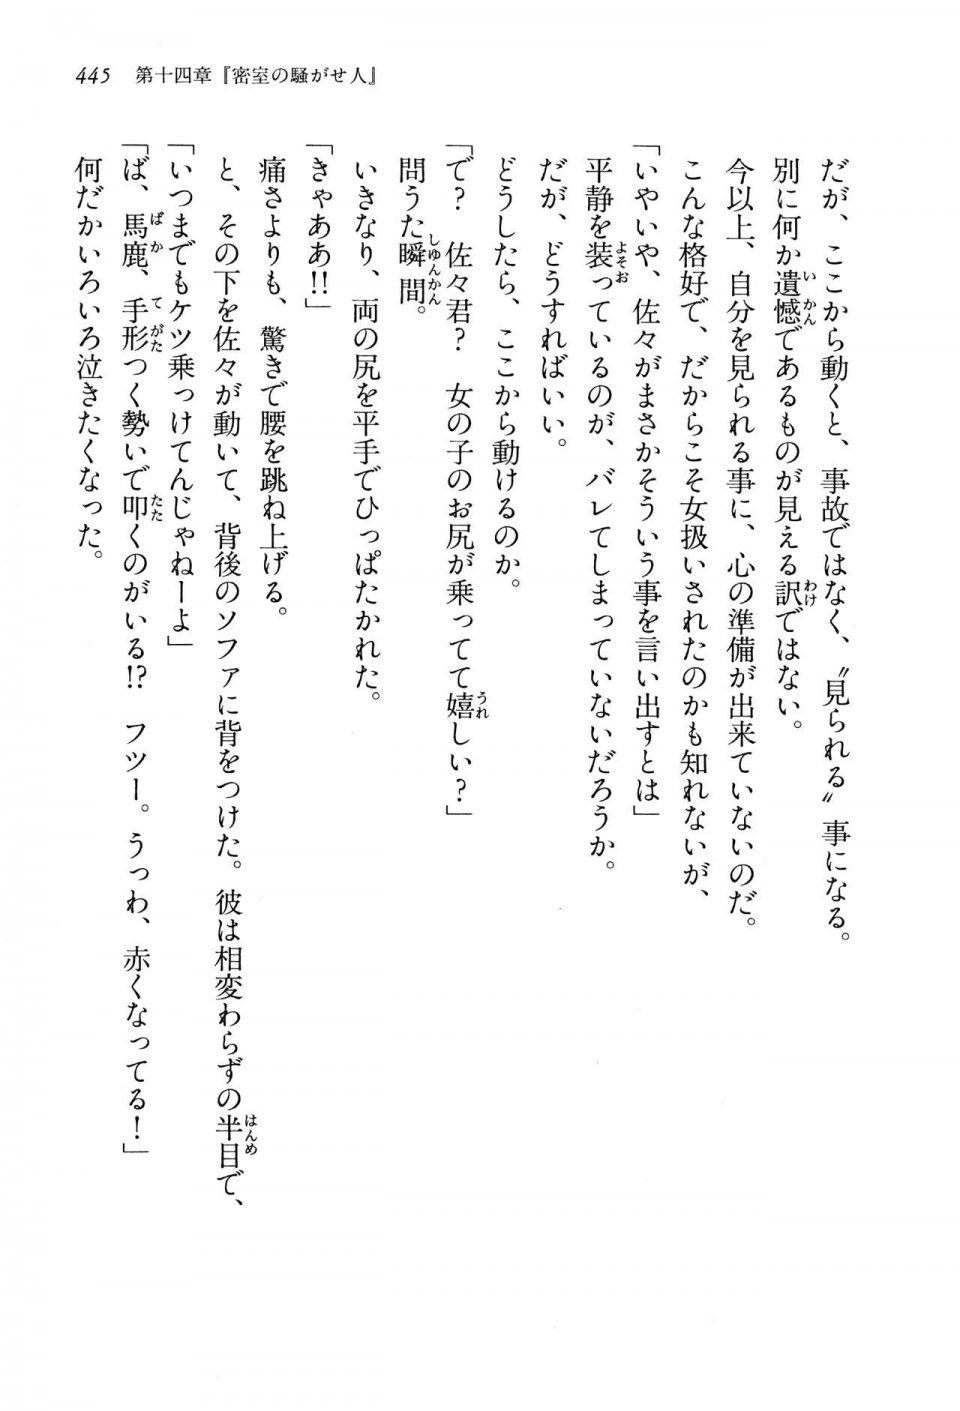 Kyoukai Senjou no Horizon LN Vol 13(6A) - Photo #445